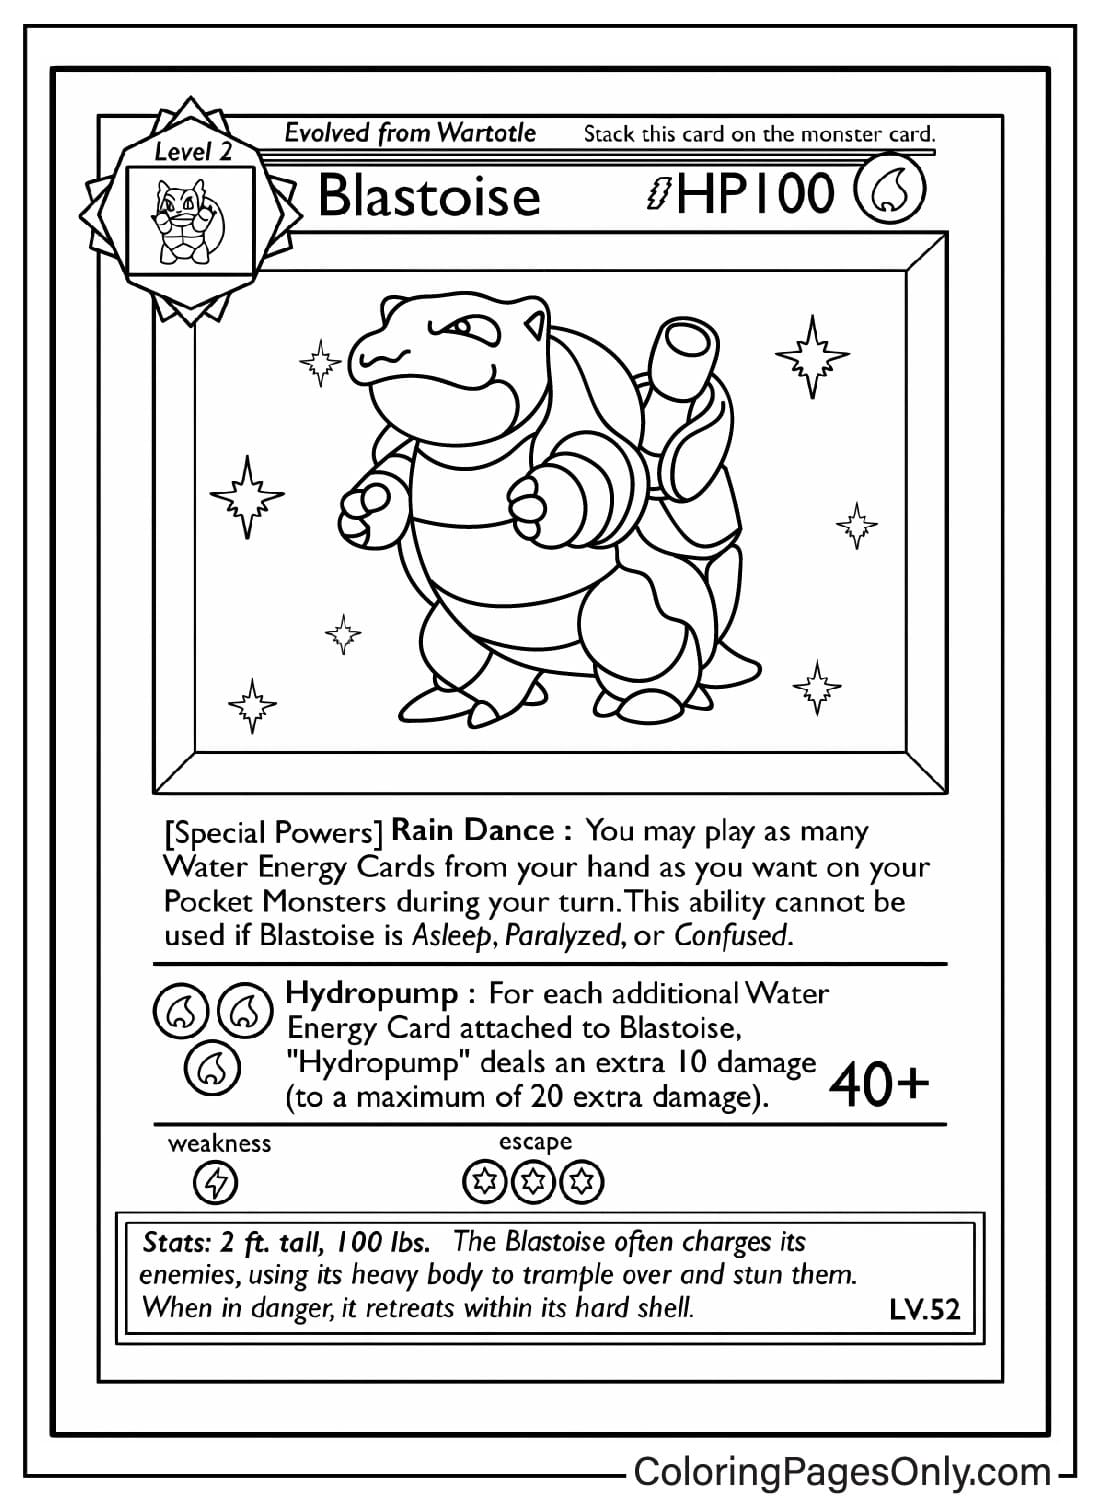 Blastoise Pokemon kaart kleurplaat van Pokemon Card